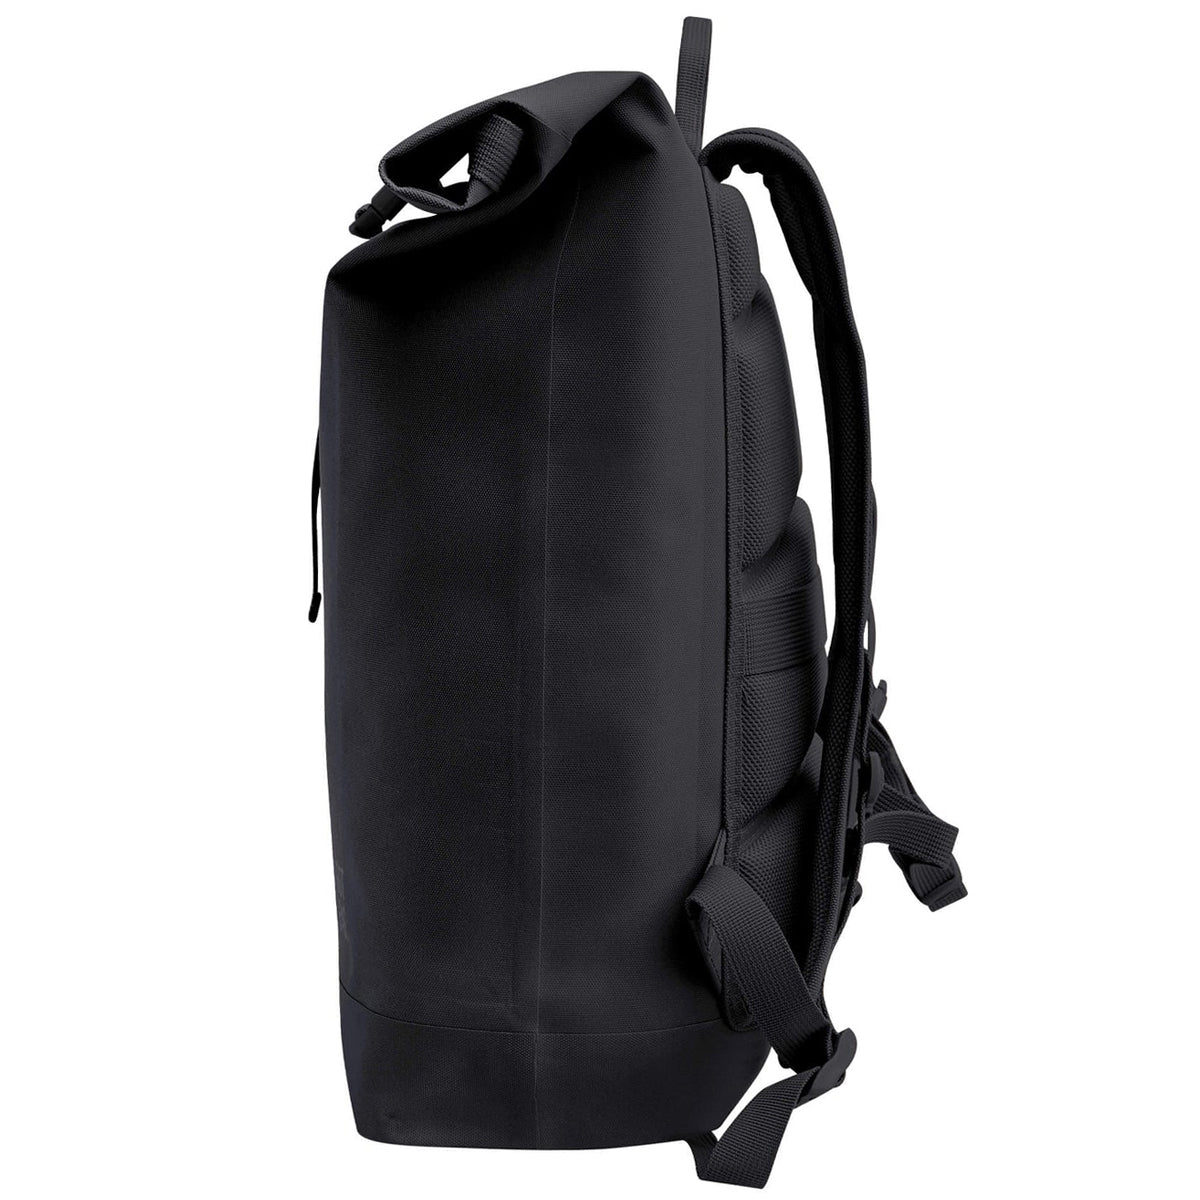 Got Bag Rolltop Lite Backpack - Black Monochrome image 3